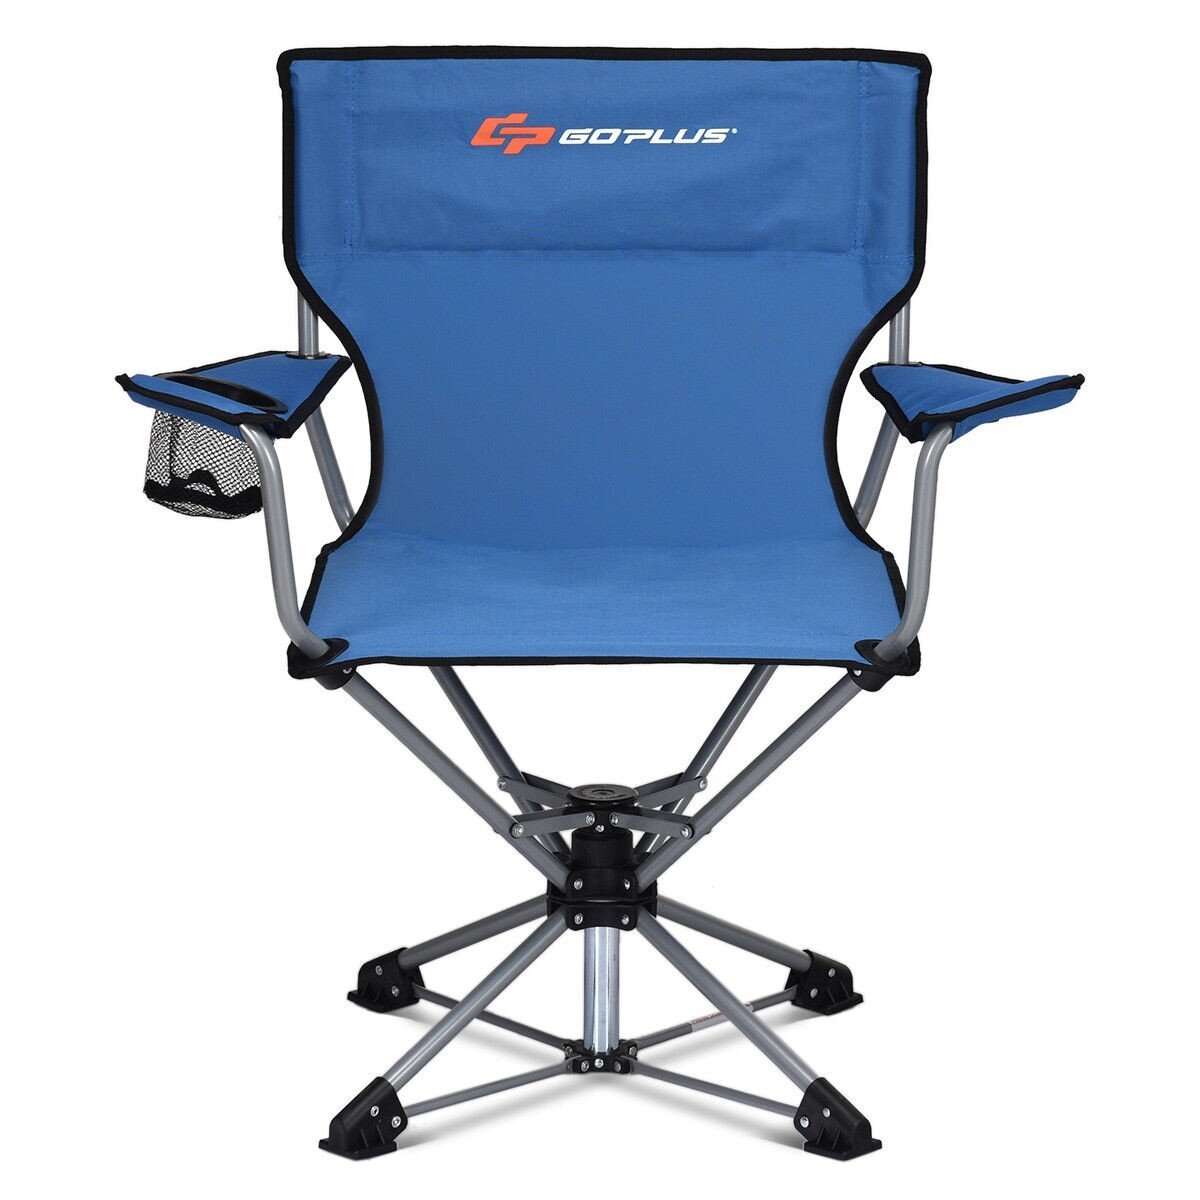 https://assets.wfcdn.com/im/56911919/compr-r85/1453/145378157/folding-camping-chair.jpg